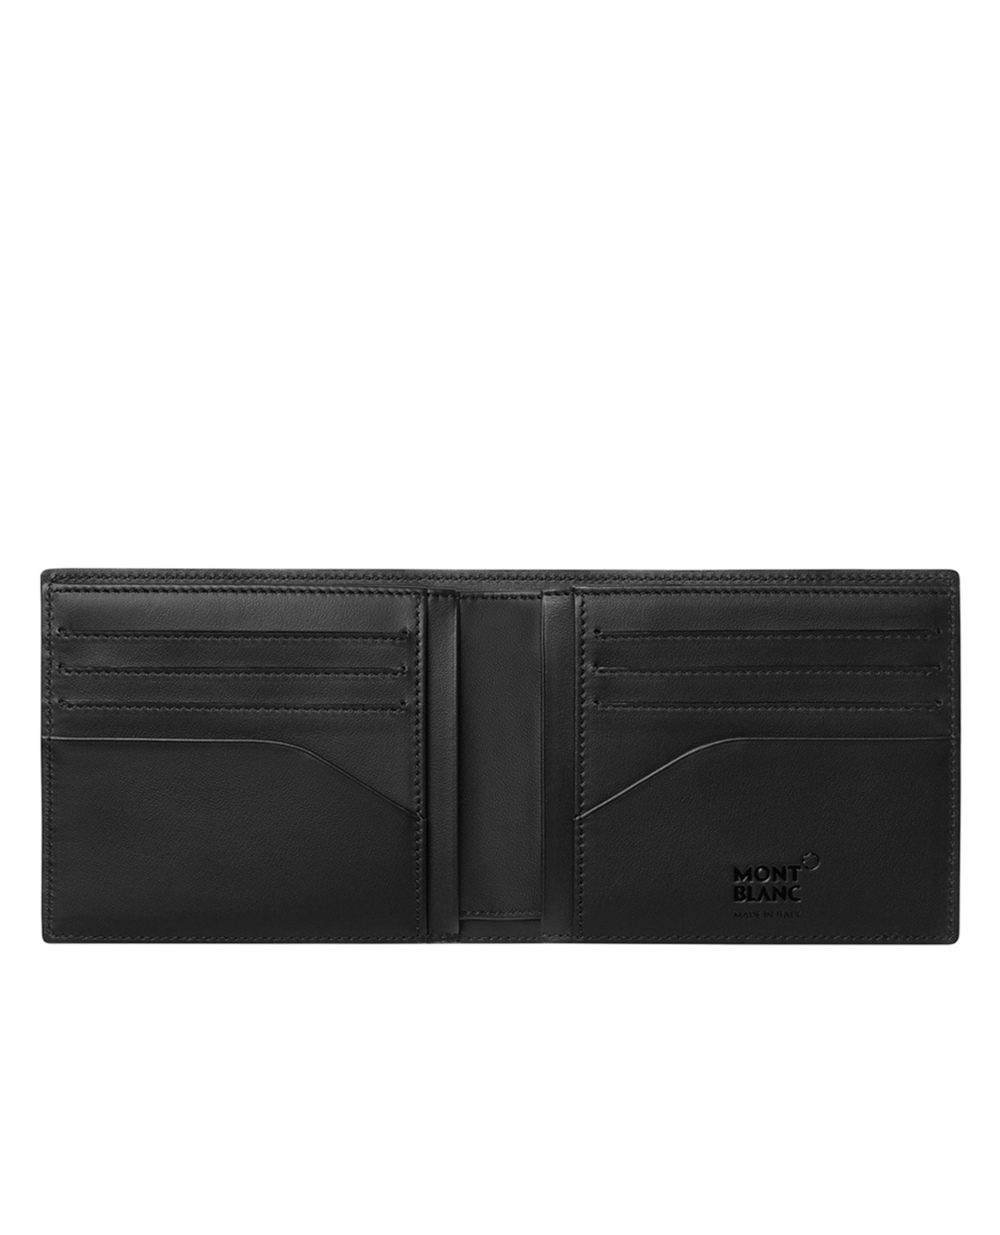 Бумажник 8 сс Montblanc Extreme 2.0 Montblanc 123947, черный цвет • Купить в интернет-магазине Kameron